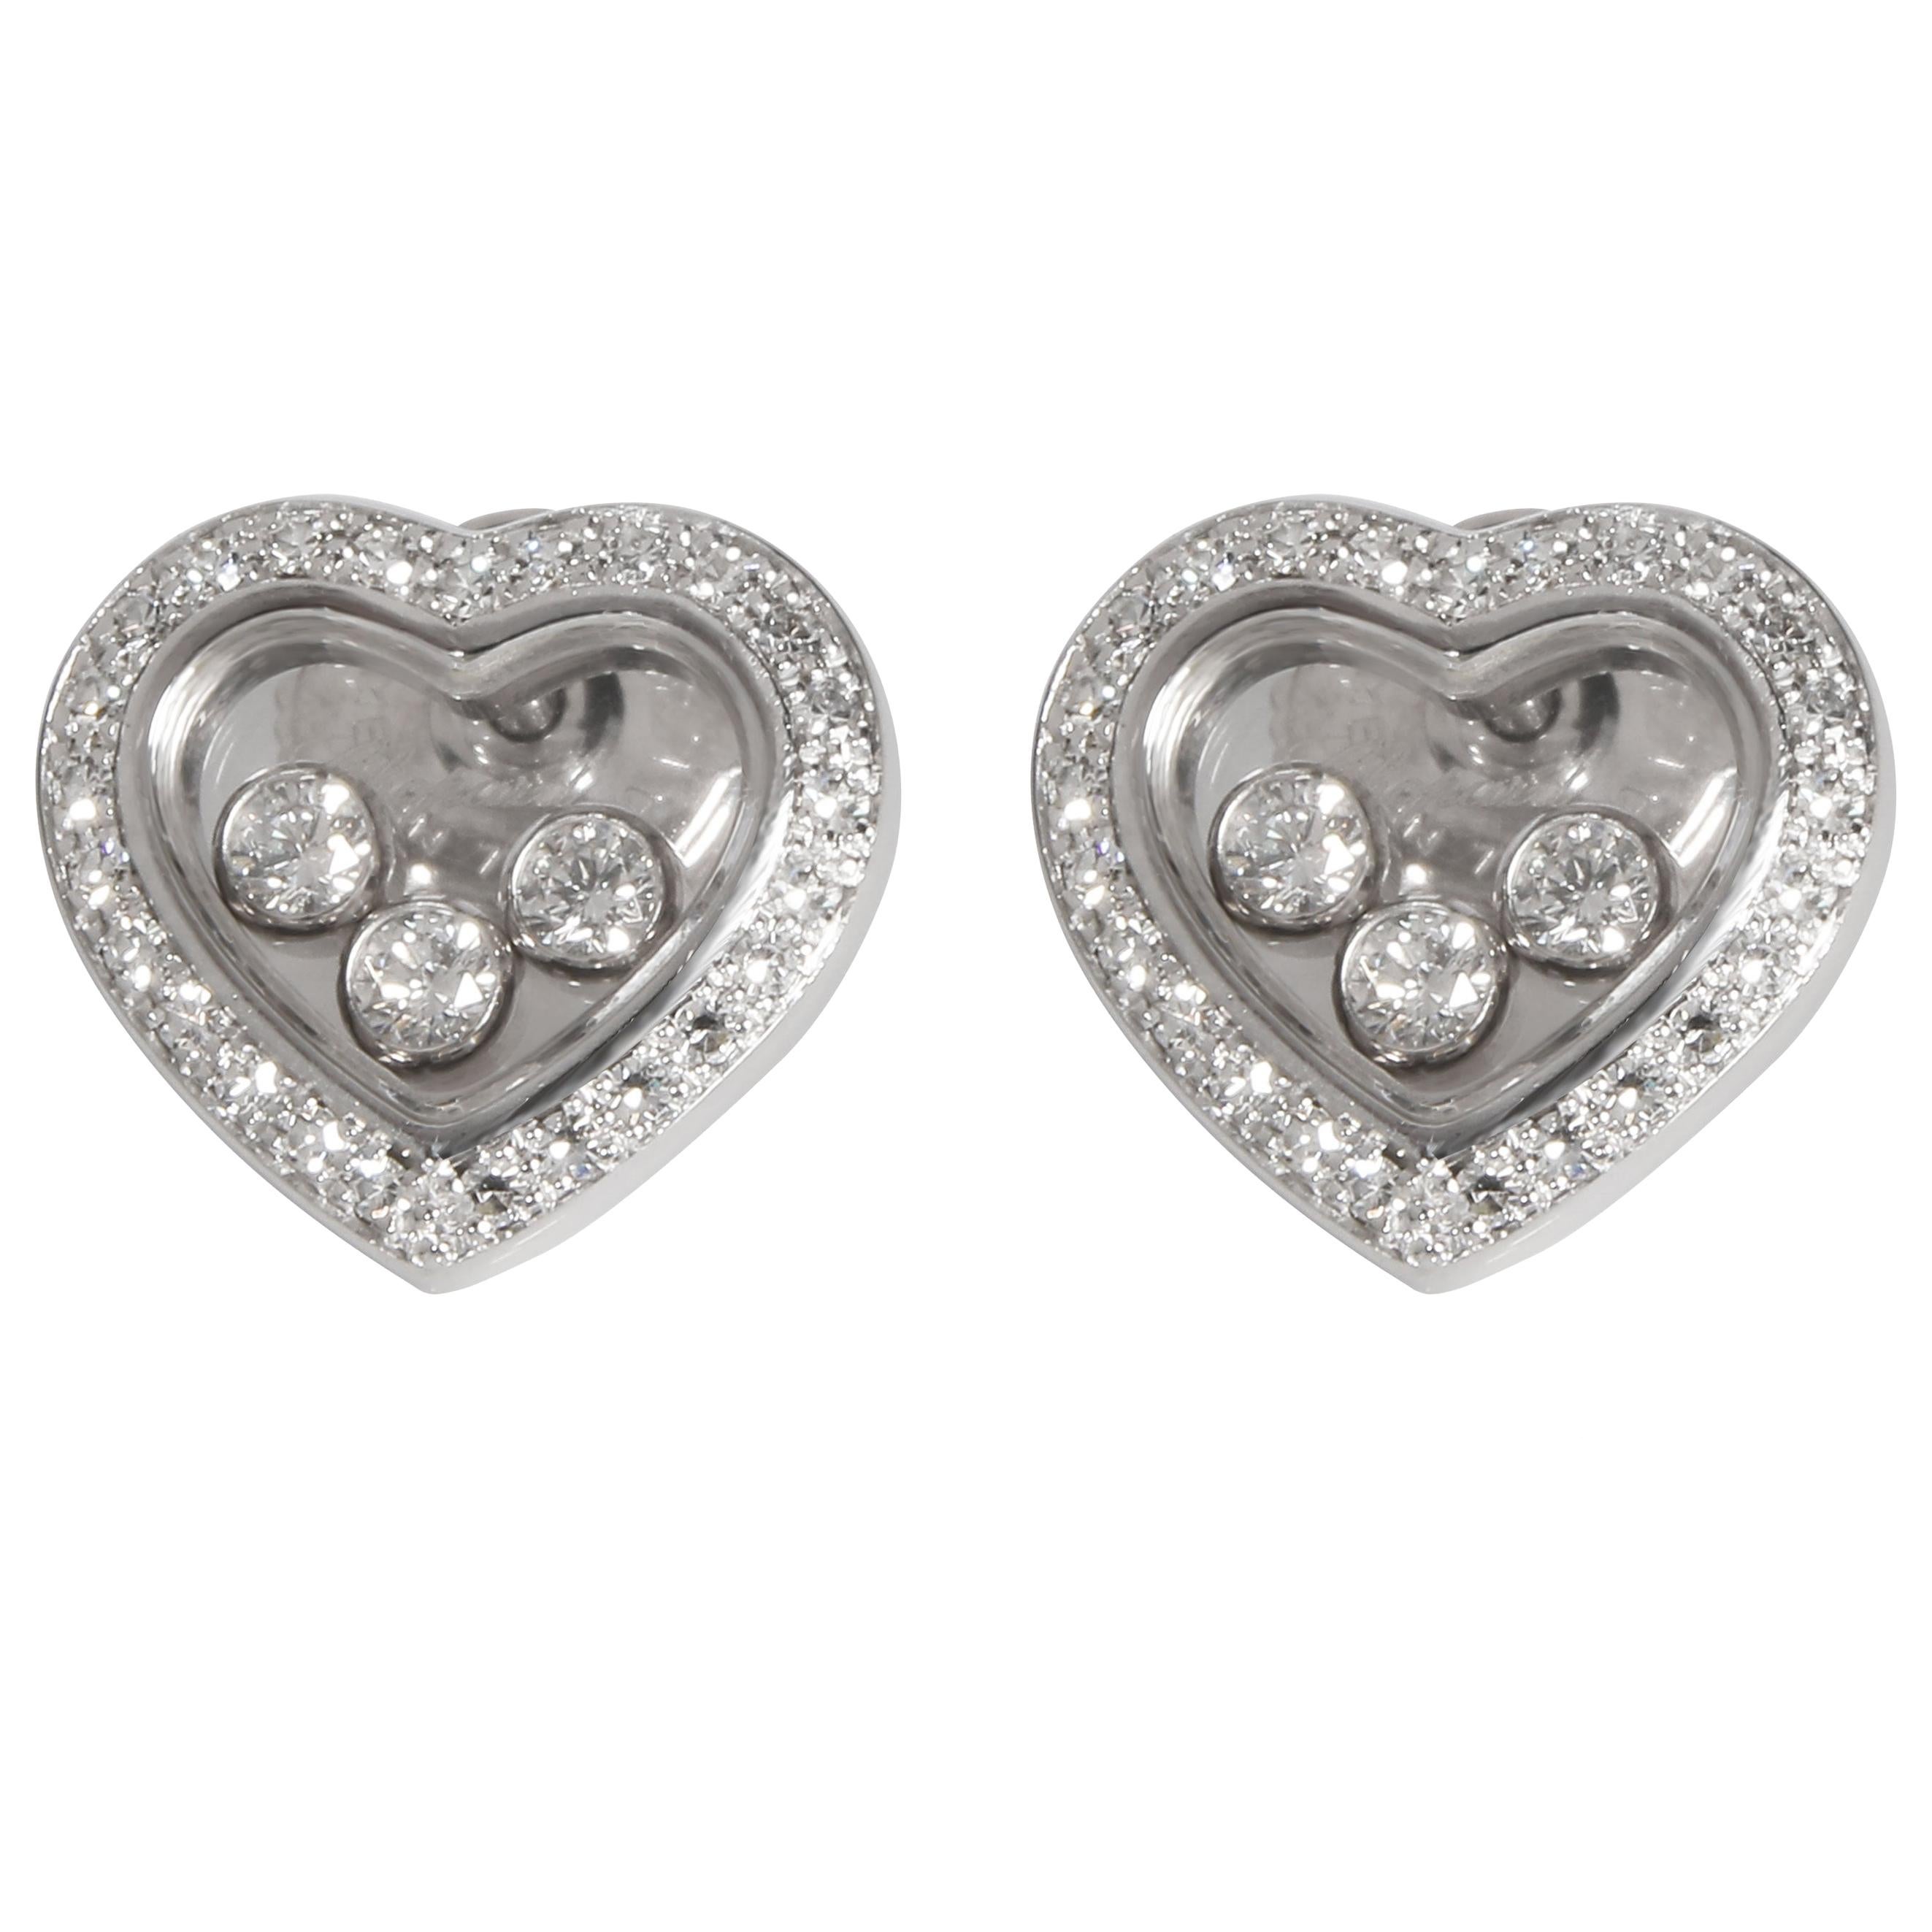 Chopard Happy Diamonds Icons Heart Earrings in 18 Karat White Gold 0.70 Carat